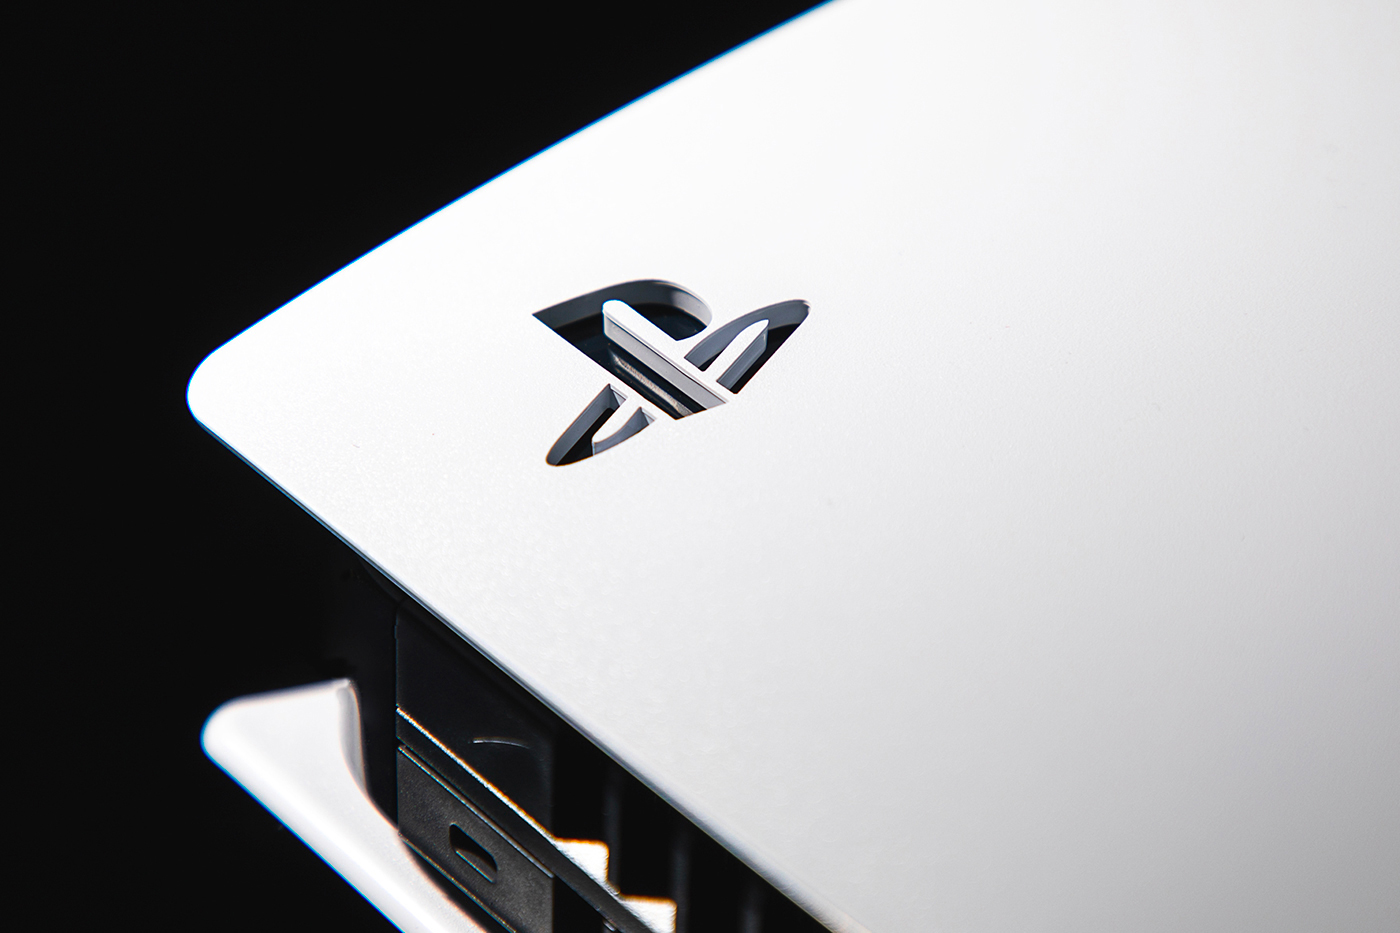 Sony ต้องการที่จะผลิตเครื่อง PS4 เพิ่มเติมเพื่อรับมือกับปัญหาการขาดแคลนของ PlayStation 5